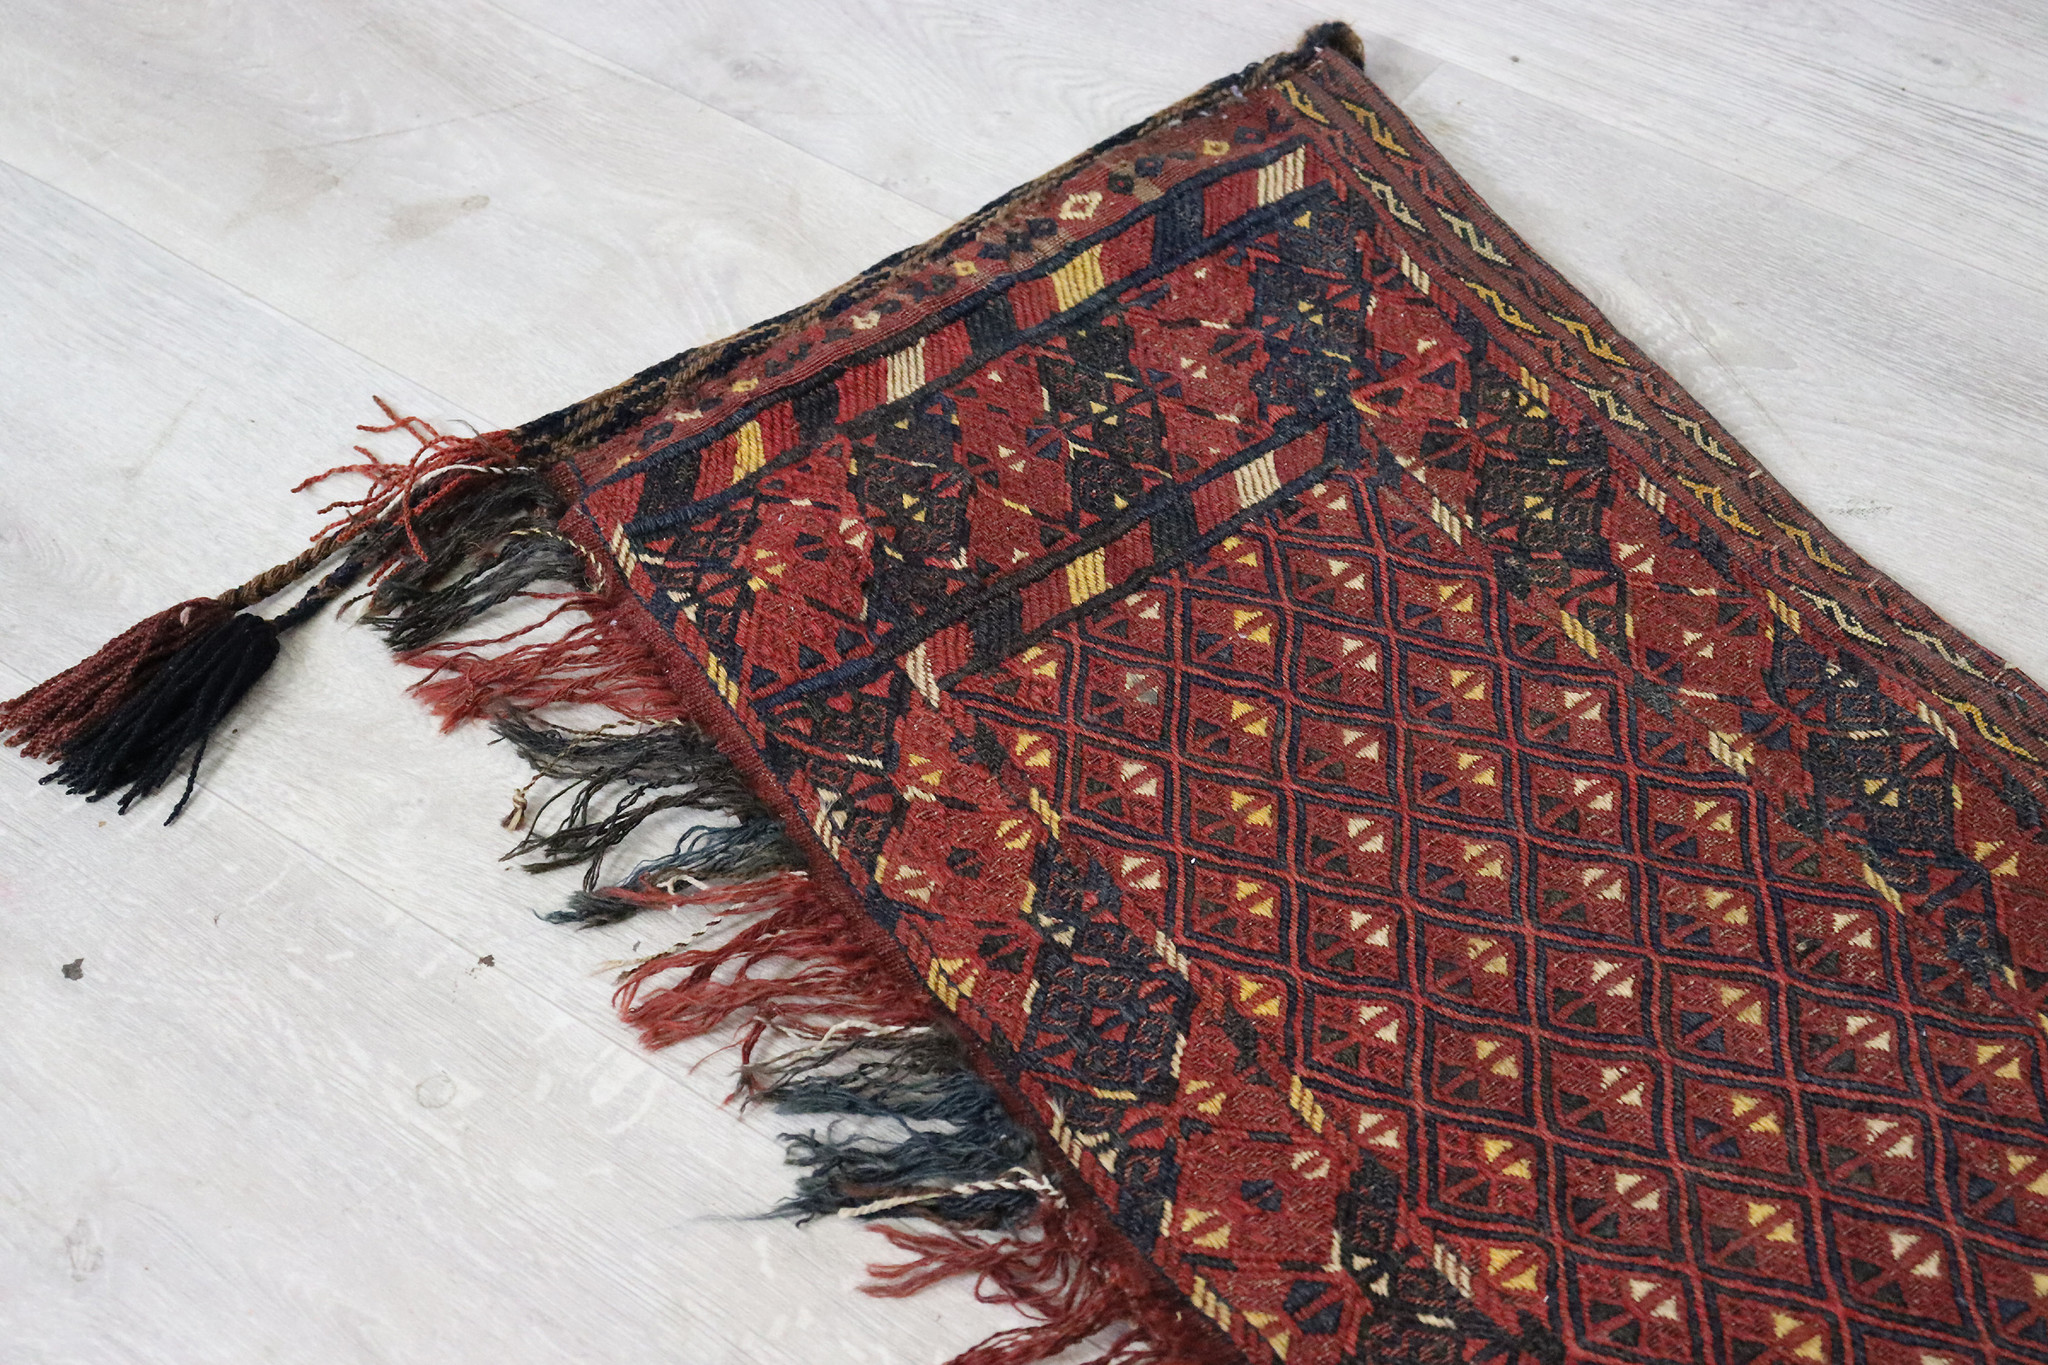 Antik seltener handgeknüpfte Turkmenische Nomaden Zelttasche tasche  yomud Torba aus Afghanistan Turkmenistan Bukhara Djaller Nr:22/A - Copy - Copy